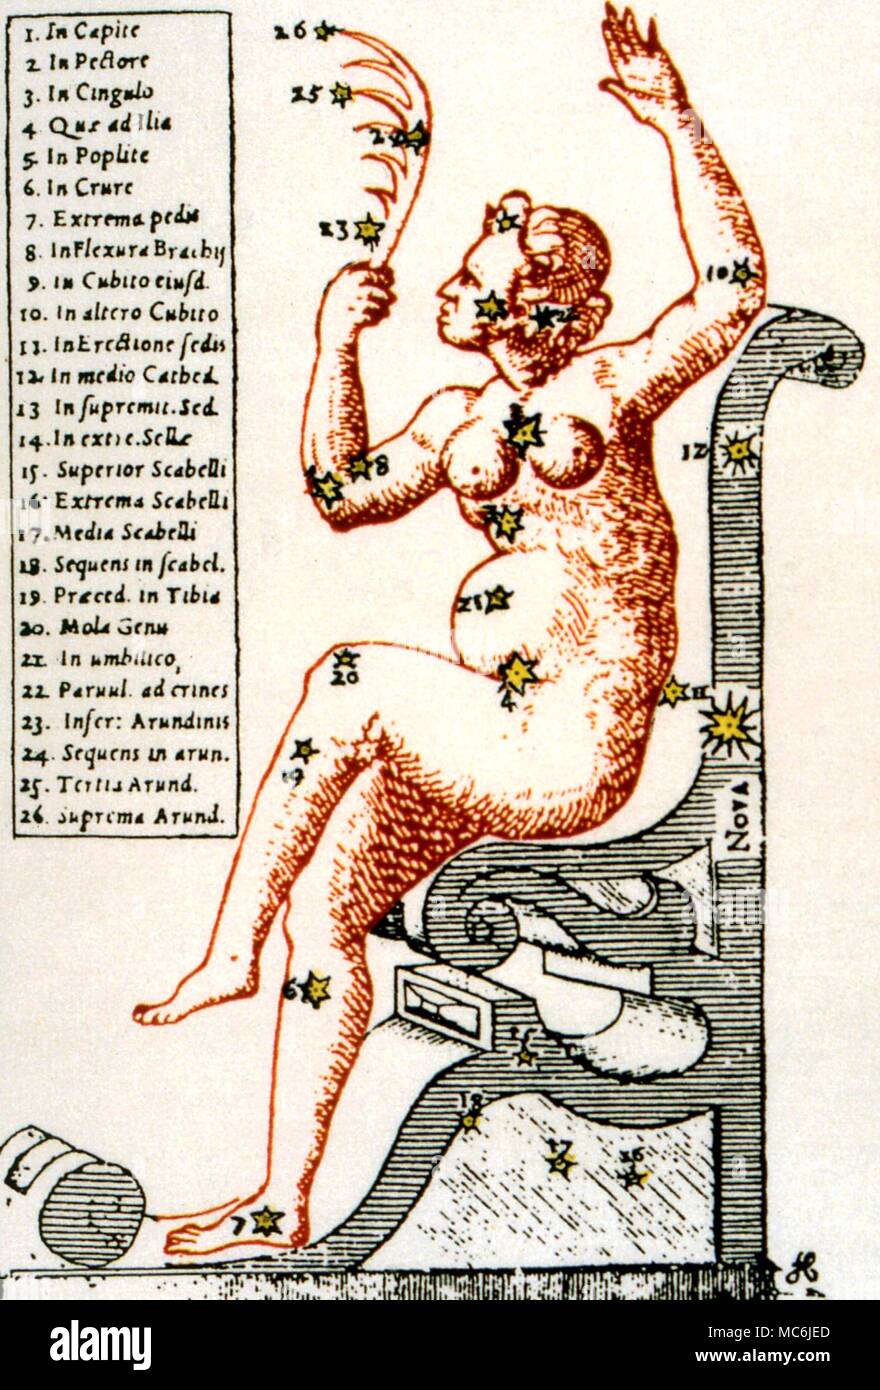 NOSTRADAMUS - - PRÉDICTION DE NOVA. En Quatrain 2:41 (publié 1555), Nostradamus a prévu la Nova, ou Nouvelle Star, de 1572. Le Nova est apparue dans la constellation de Cassiopée, ensemble dans le dos de sa chaise. L'illustration est, de Tycho Brahe Astronomiae Instauratae Progymnasmata, 1602 Banque D'Images